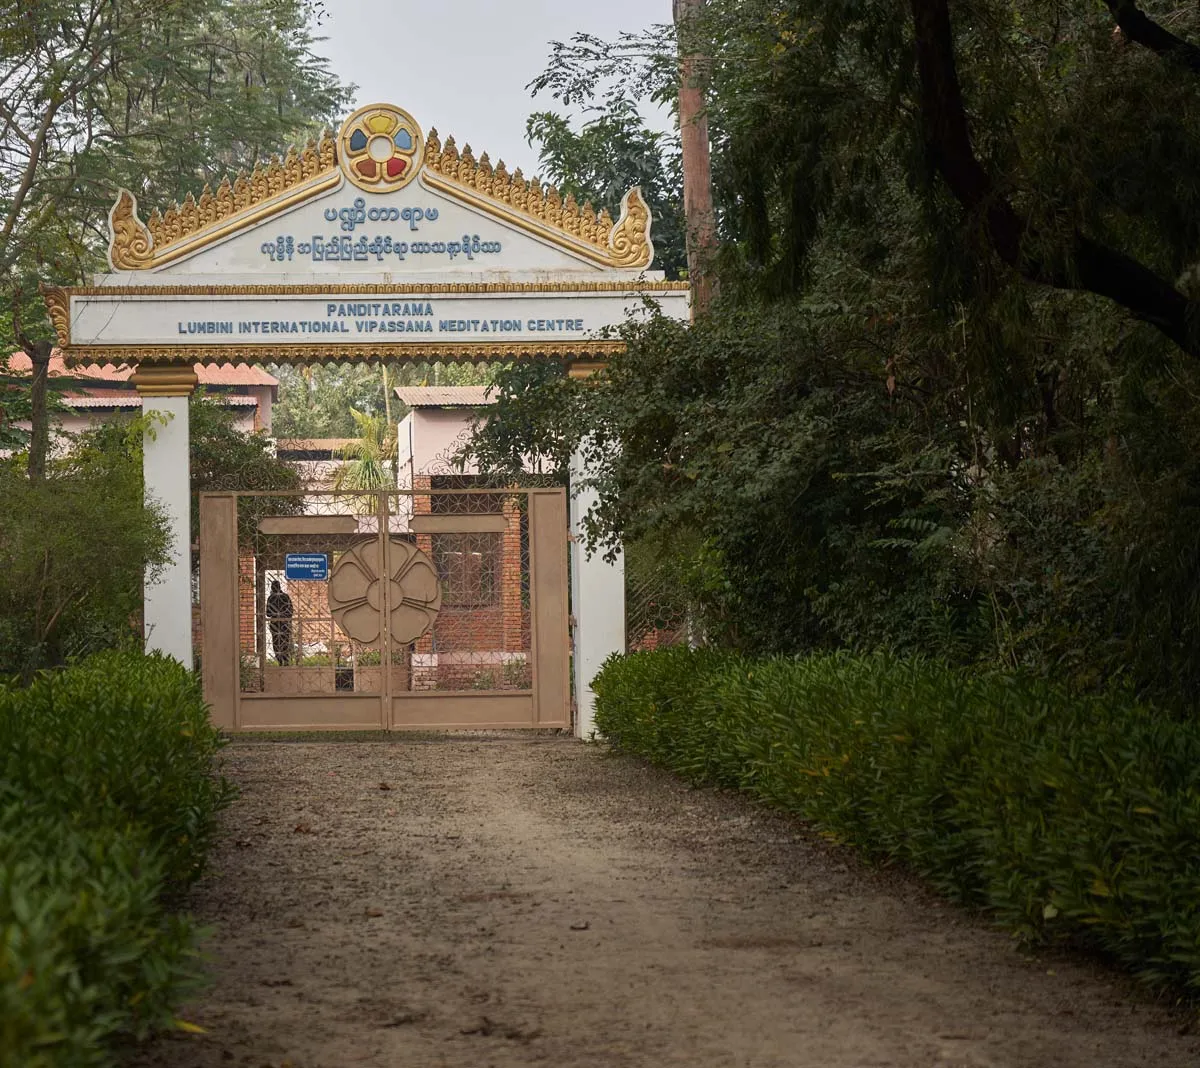 De poort naar Panditarama, het meditatiecentrum